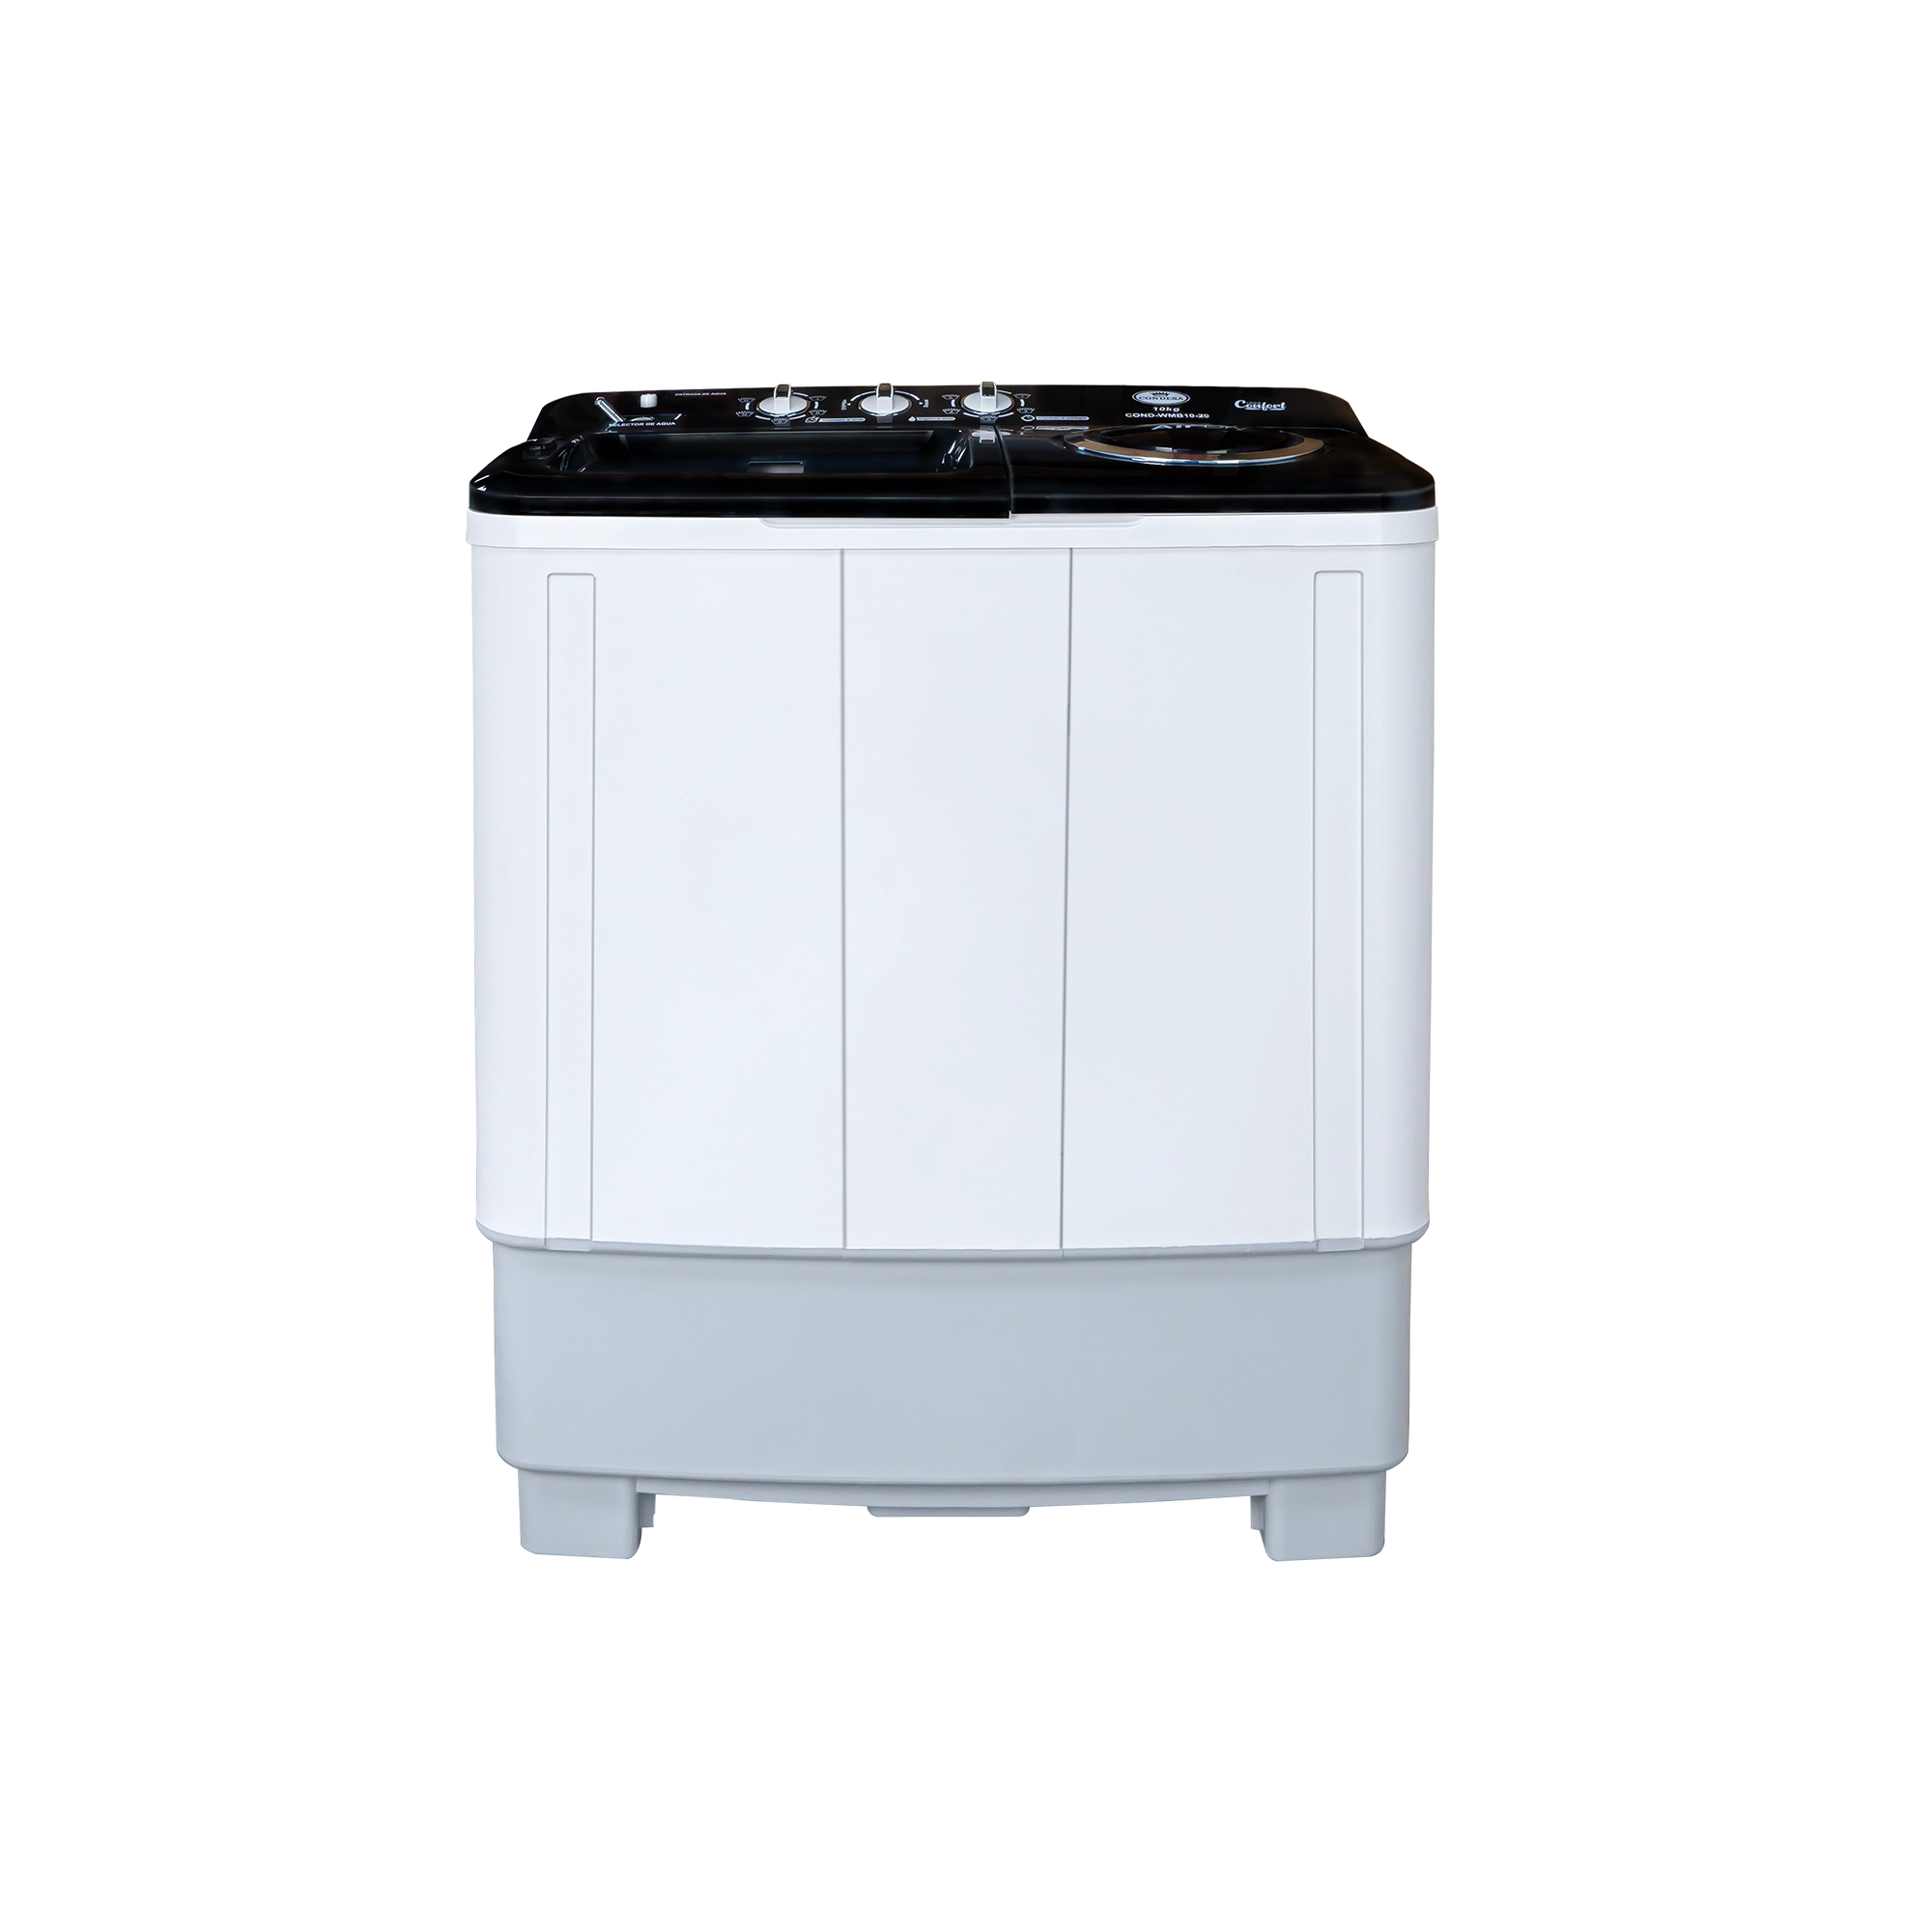 Lavadora semiautomática Doble tina / 9kg - Condesa